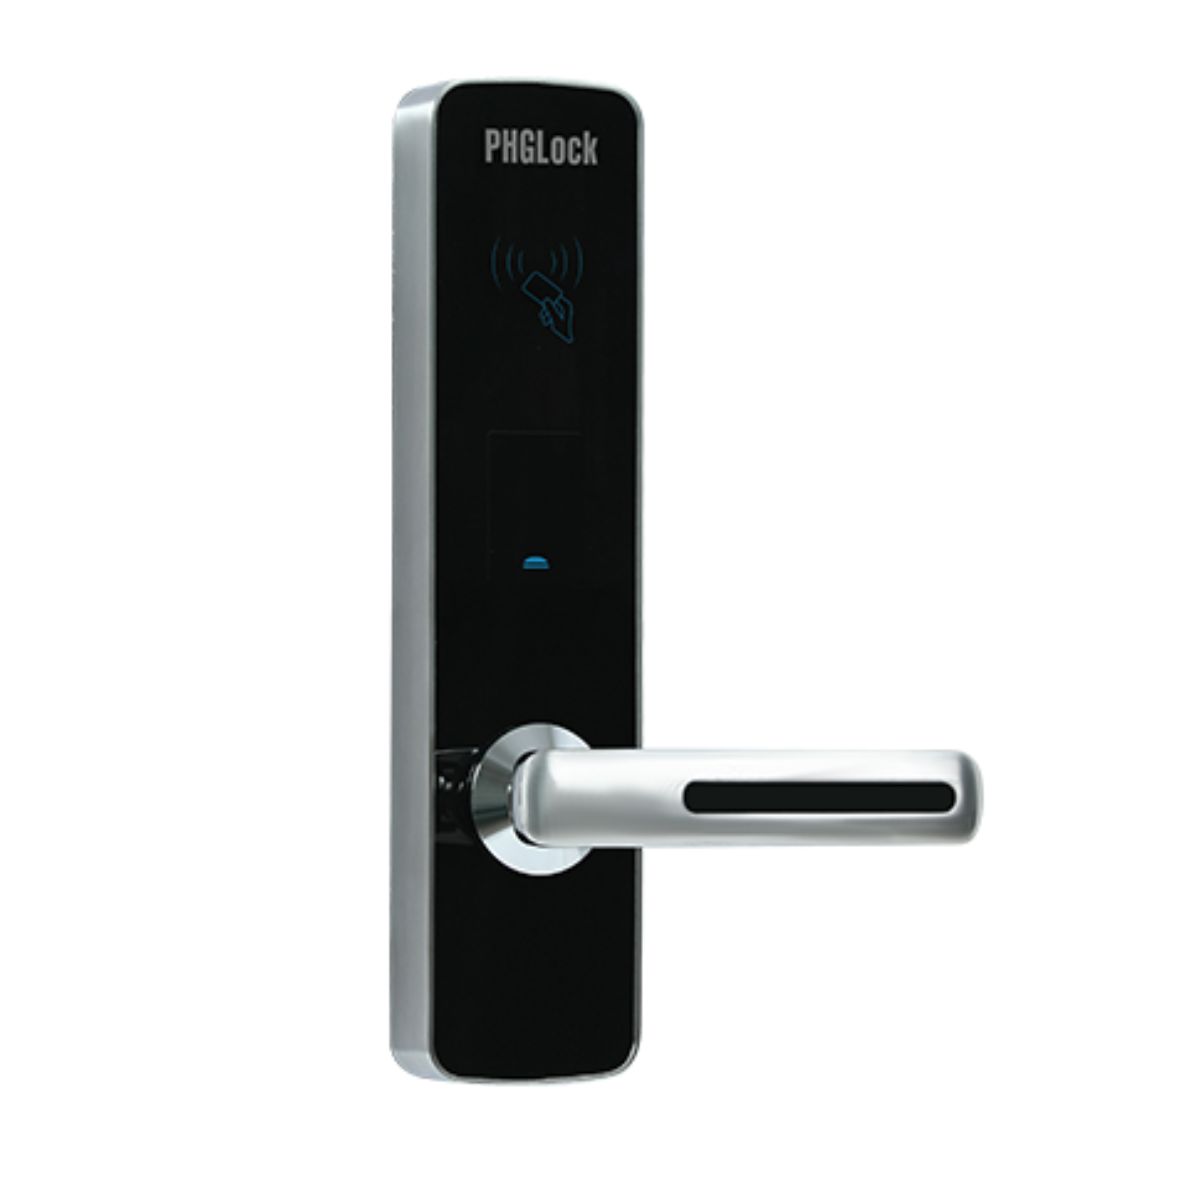 Khóa cửa thông minh khách sạn PHGLock RF7155 Thẻ TM08 & chìa khóa cơ, chống cạy cửa